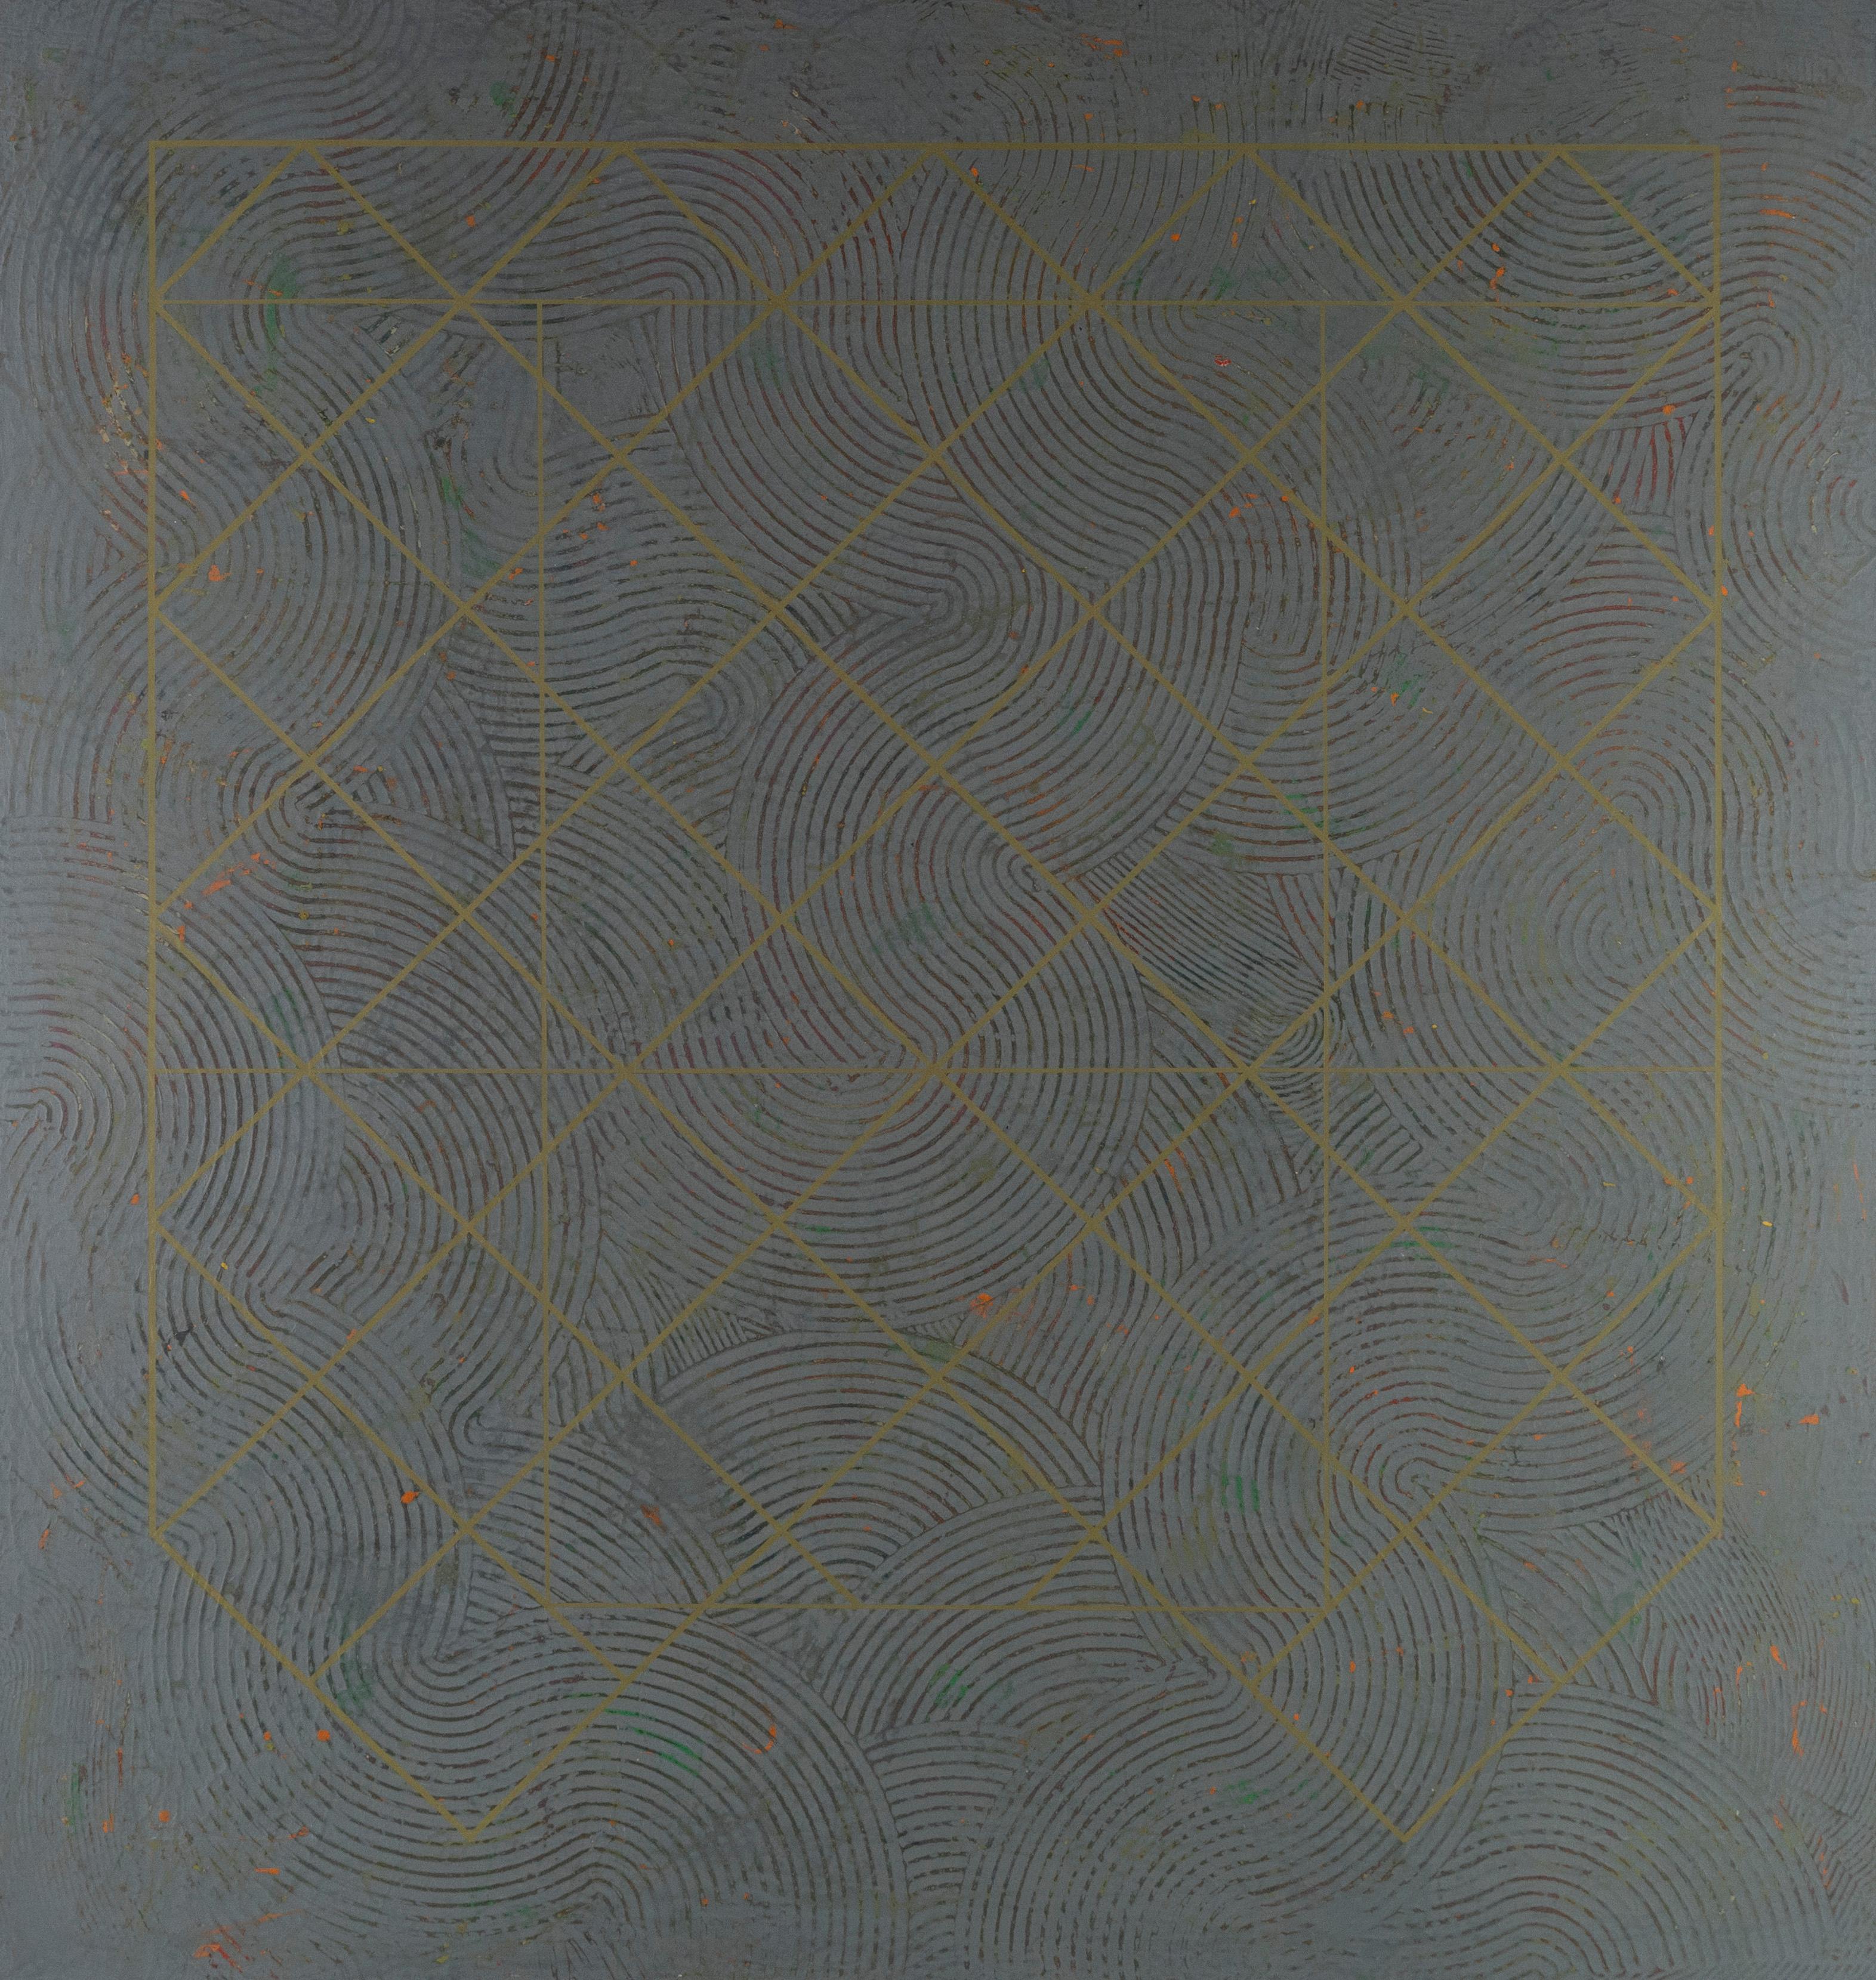 Riesige Mid Century Modern Texas Künstler Abstrakt Expressionist Minimalist Gemälde (Grau), Abstract Painting, von Duanye Hatchett